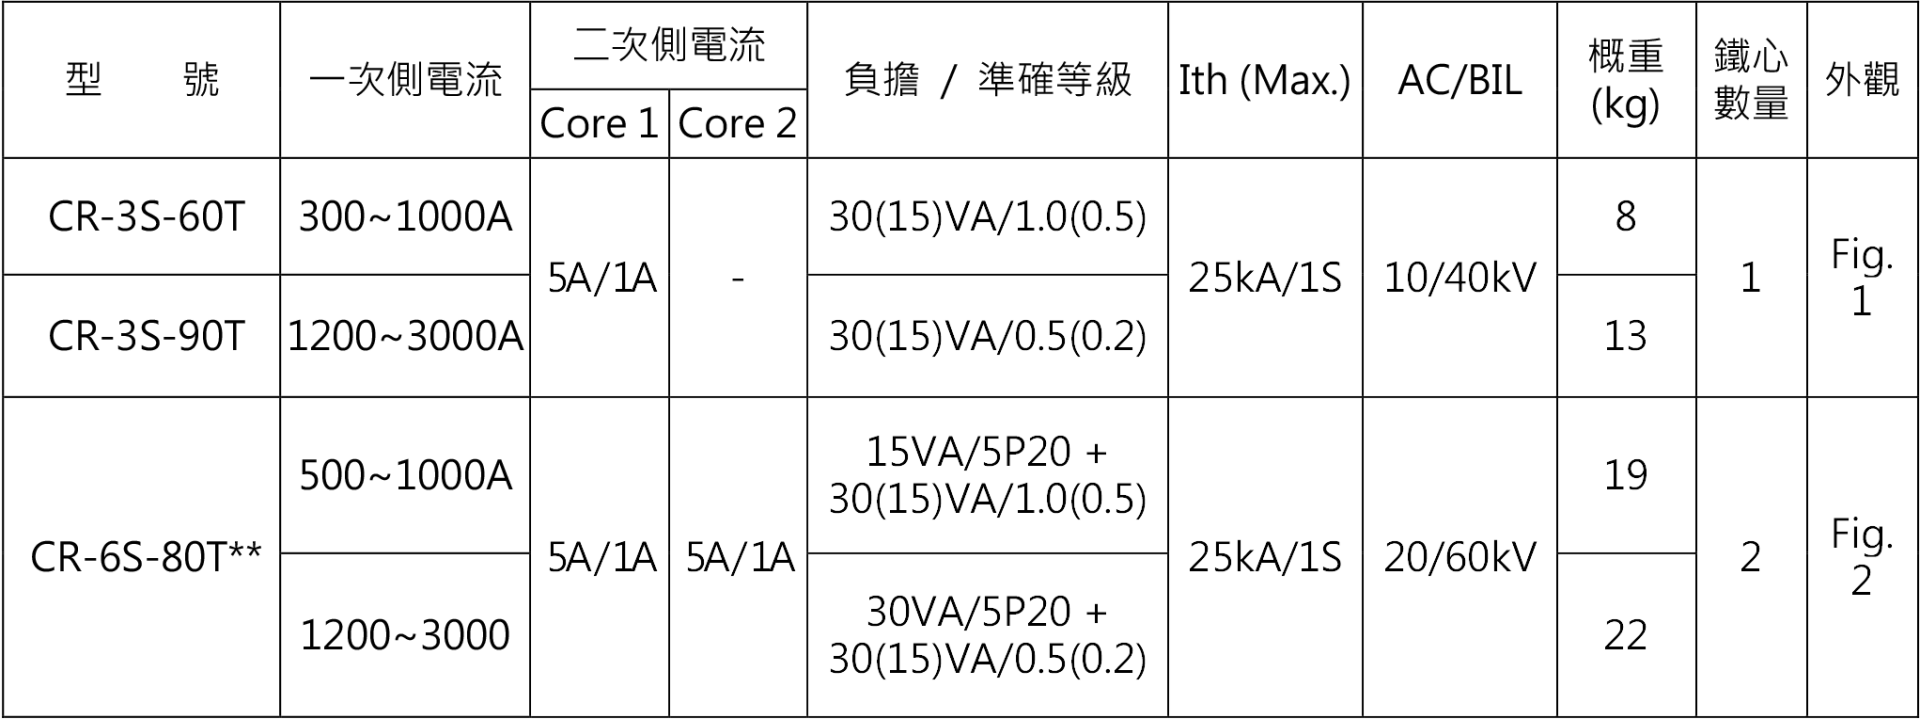 3kV/7kV 銅板端子型模注比流器 – CR-3(6)S-T 系列選用表